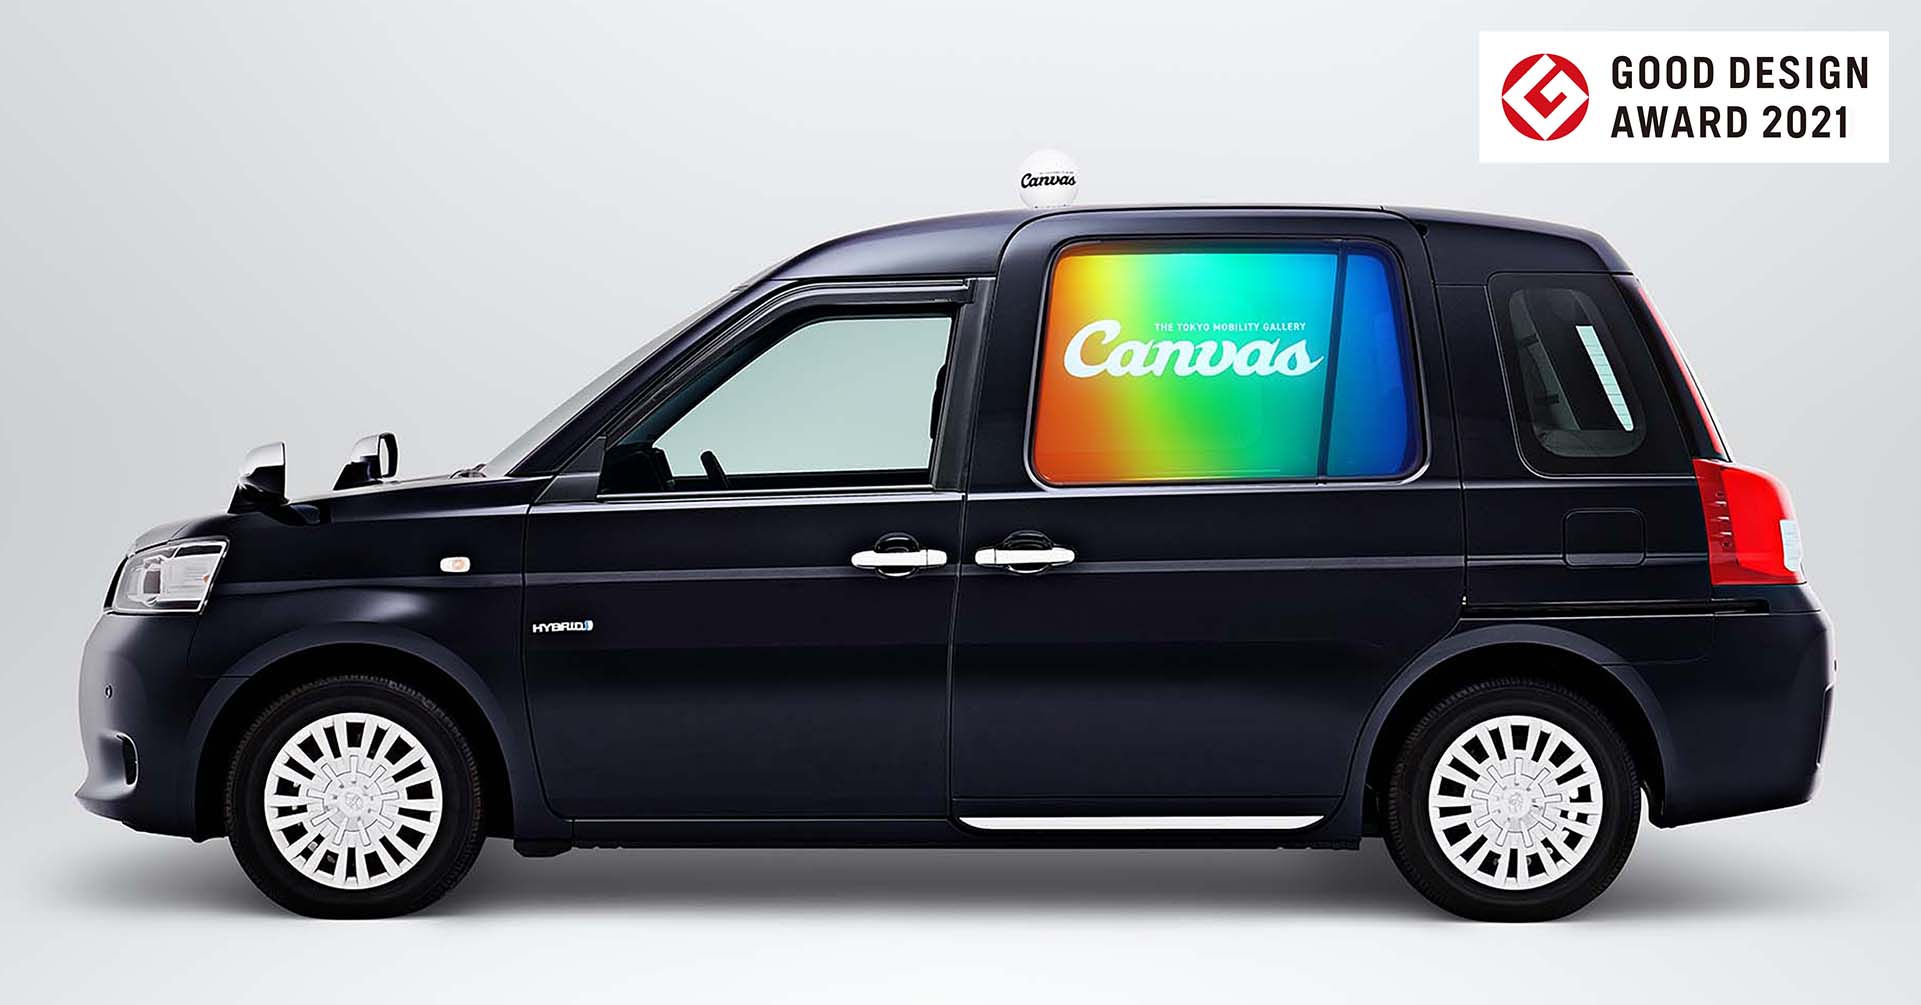 国内初の車窓サイネージサービス「Canvas」タクシーアプリ「S.RIDE」配車連携 第一弾プロジェクト『ディズニープラスタクシー』が期間限定で都内を走行のサブ画像8